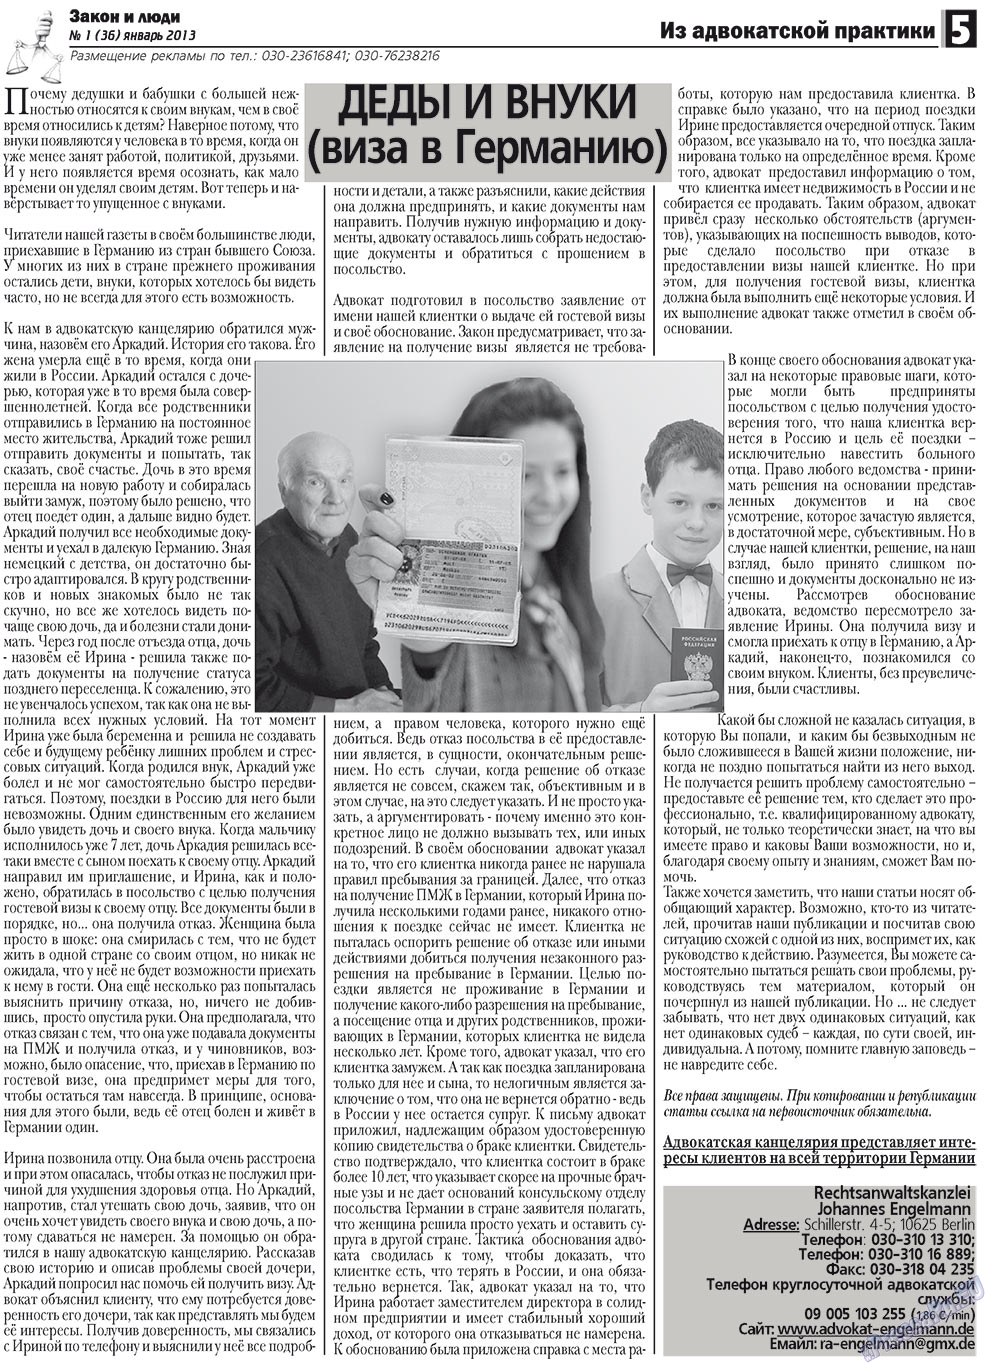 Закон и люди, газета. 2013 №1 стр.5